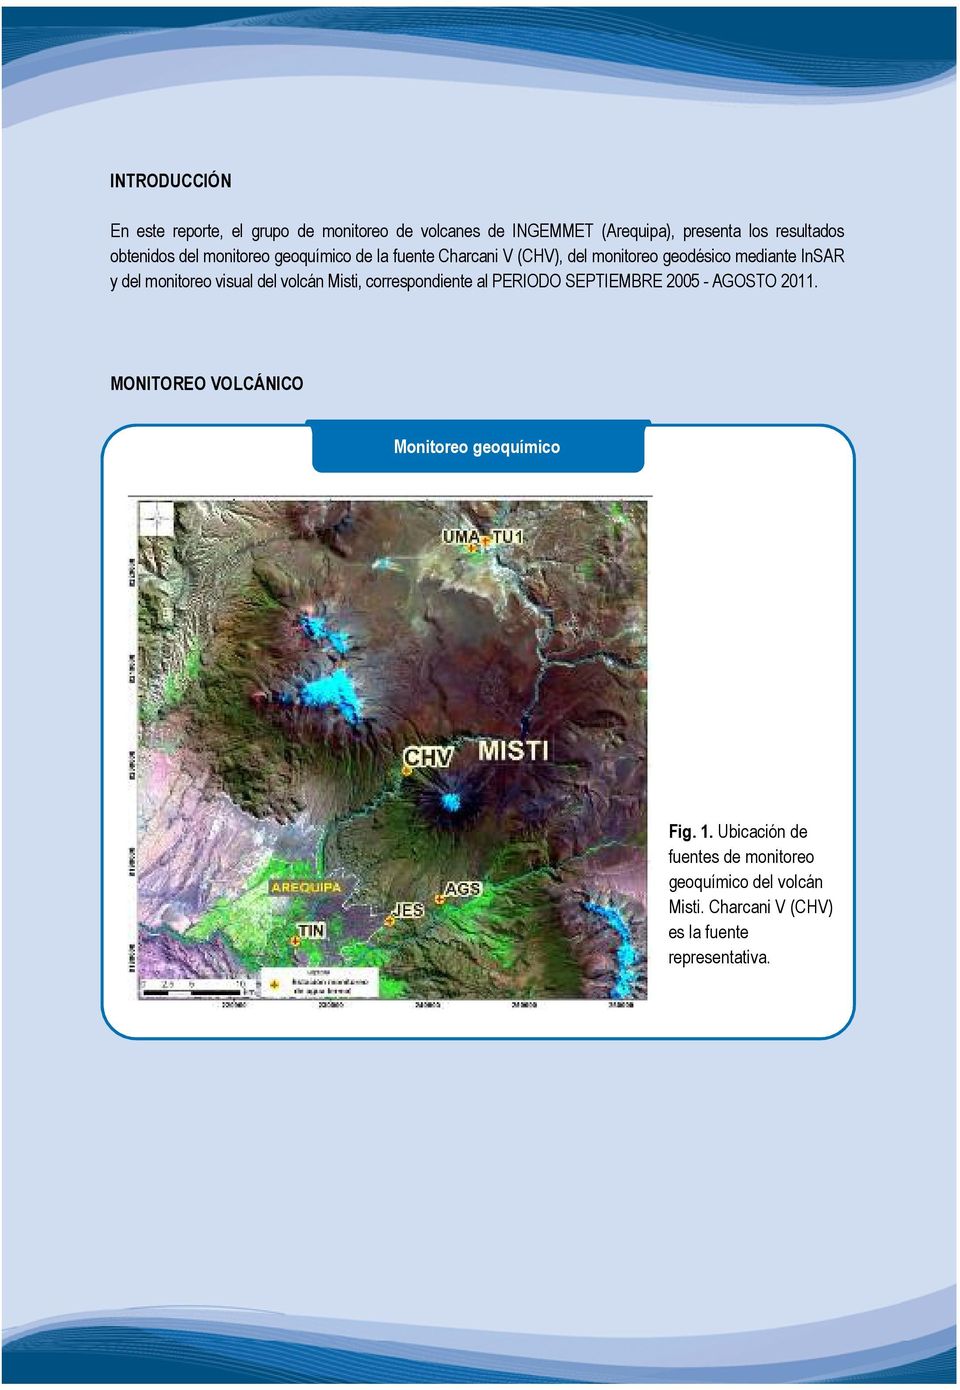 monitoreo visual del volcán Misti, correspondiente al PERIODO SEPTIEMBRE 2005 - AGOSTO 2011.